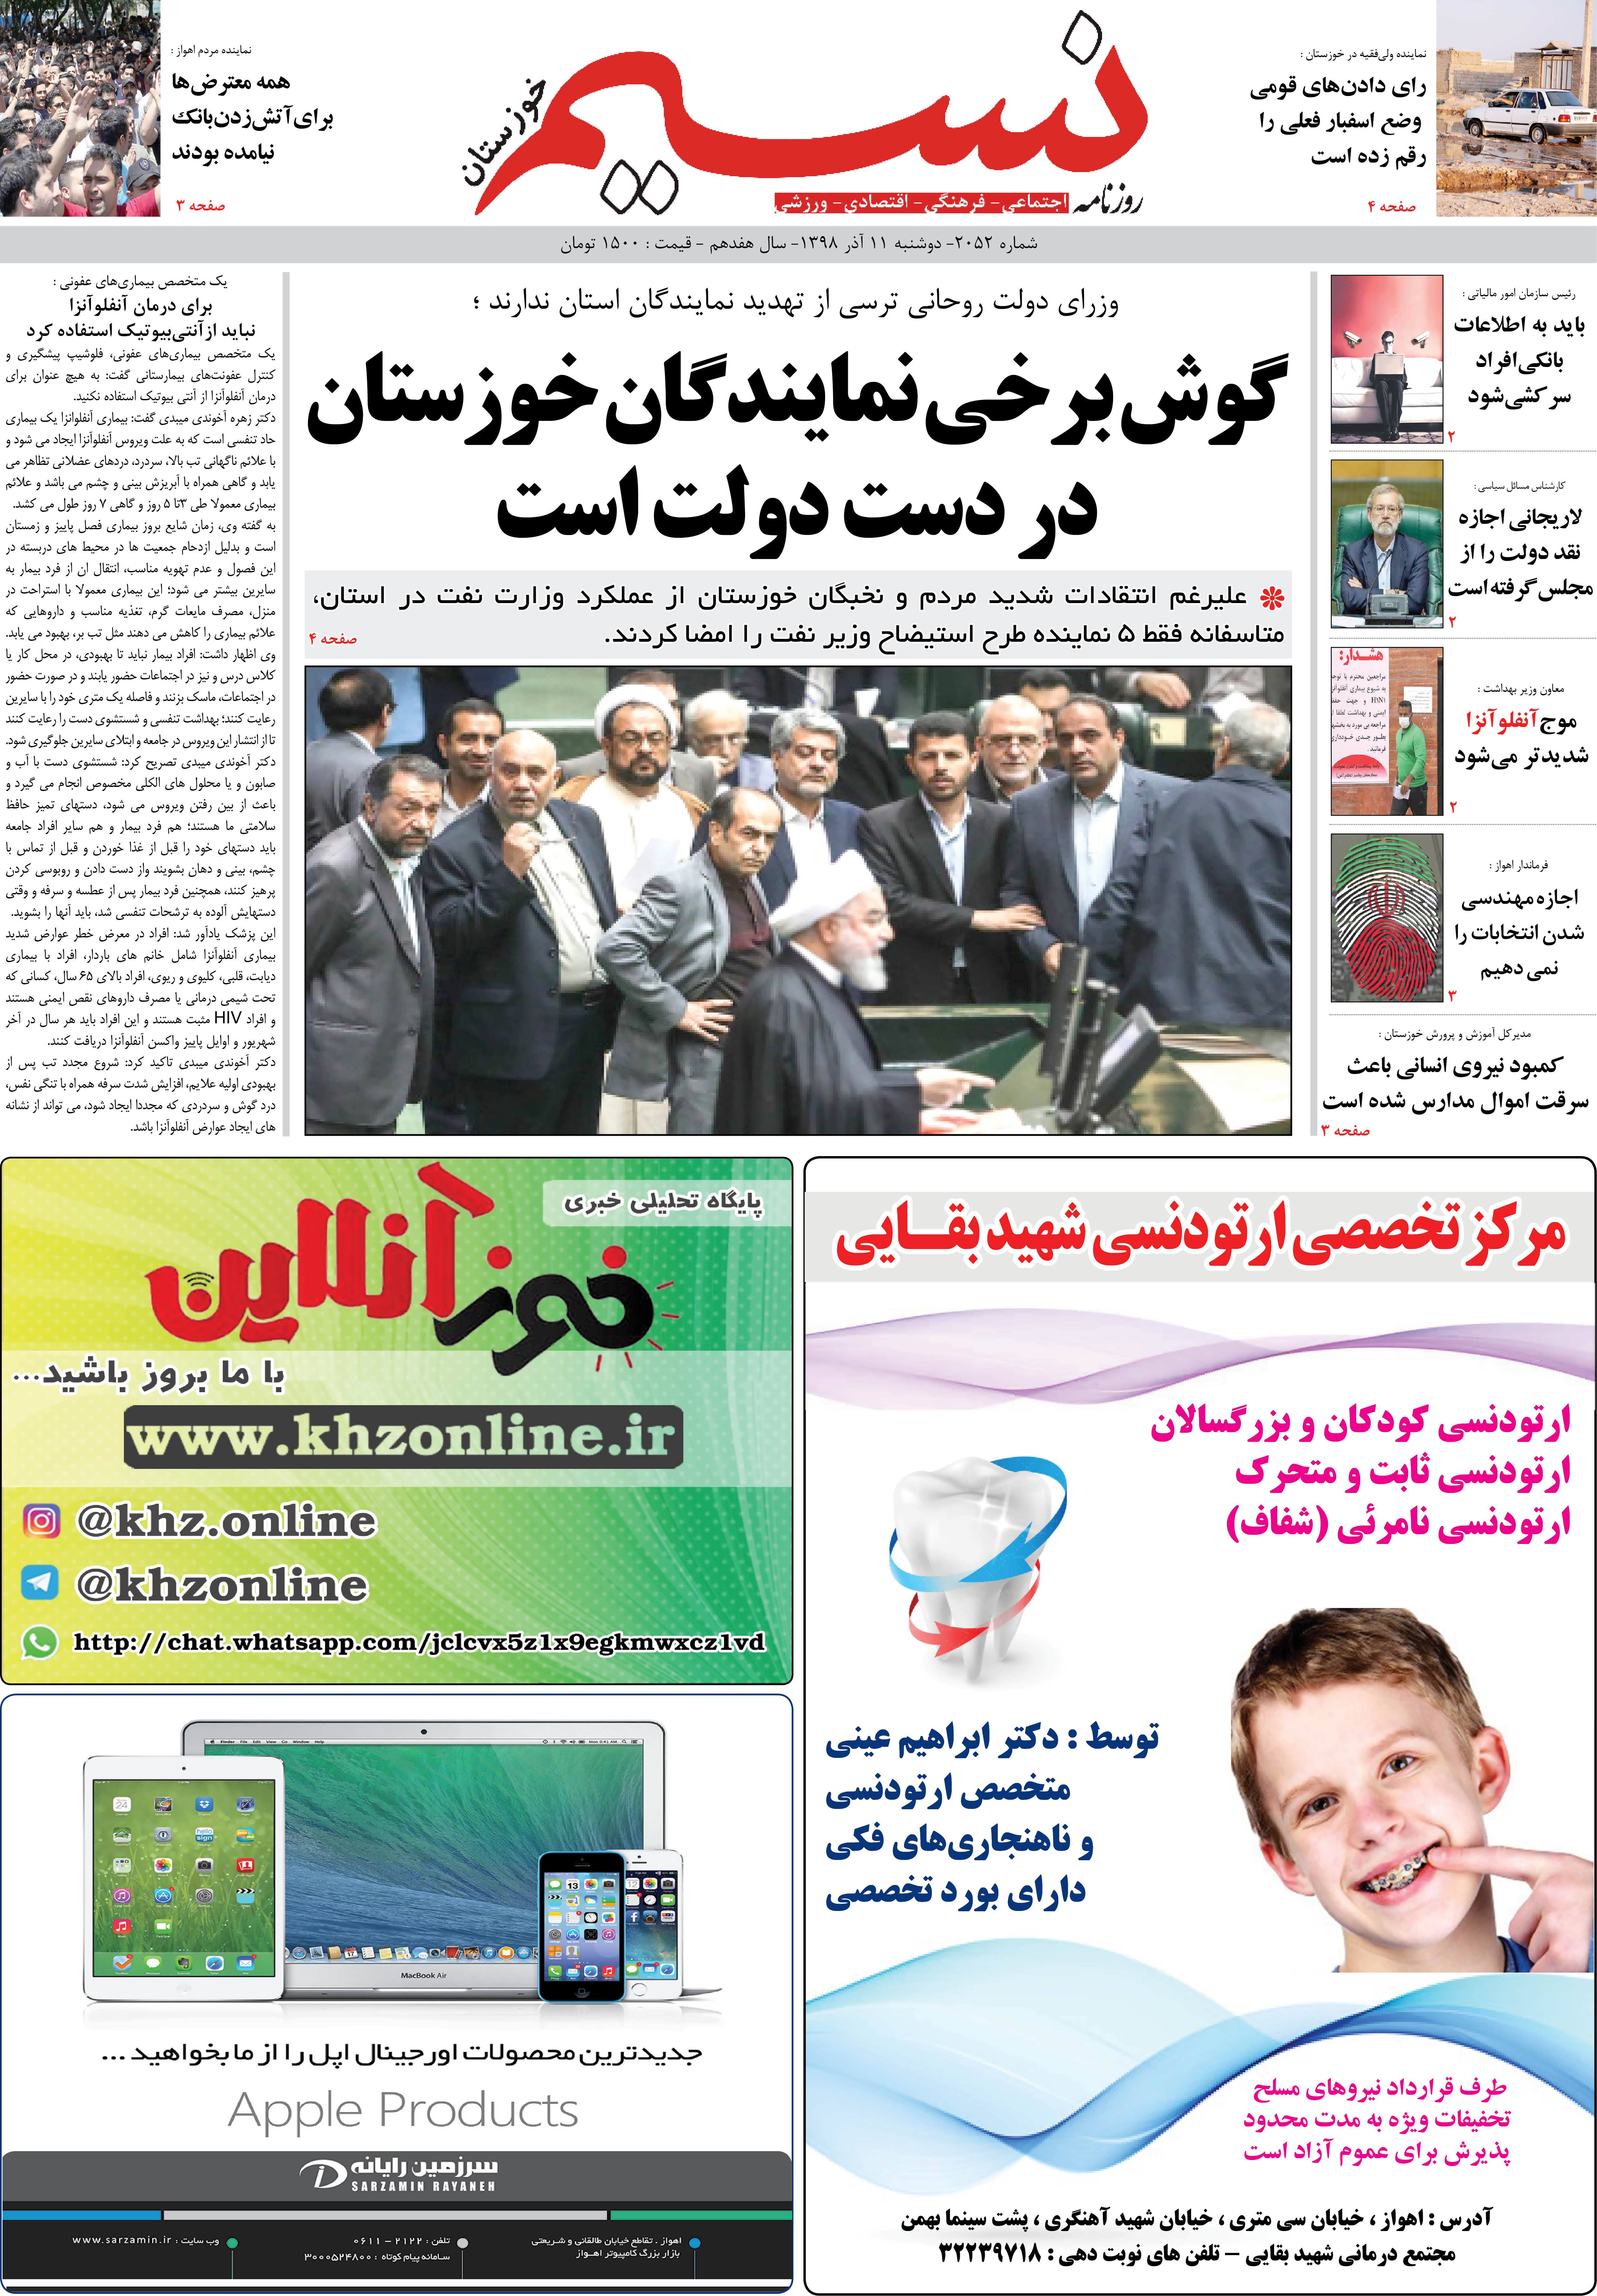 صفحه اصلی روزنامه نسیم شماره 2052 